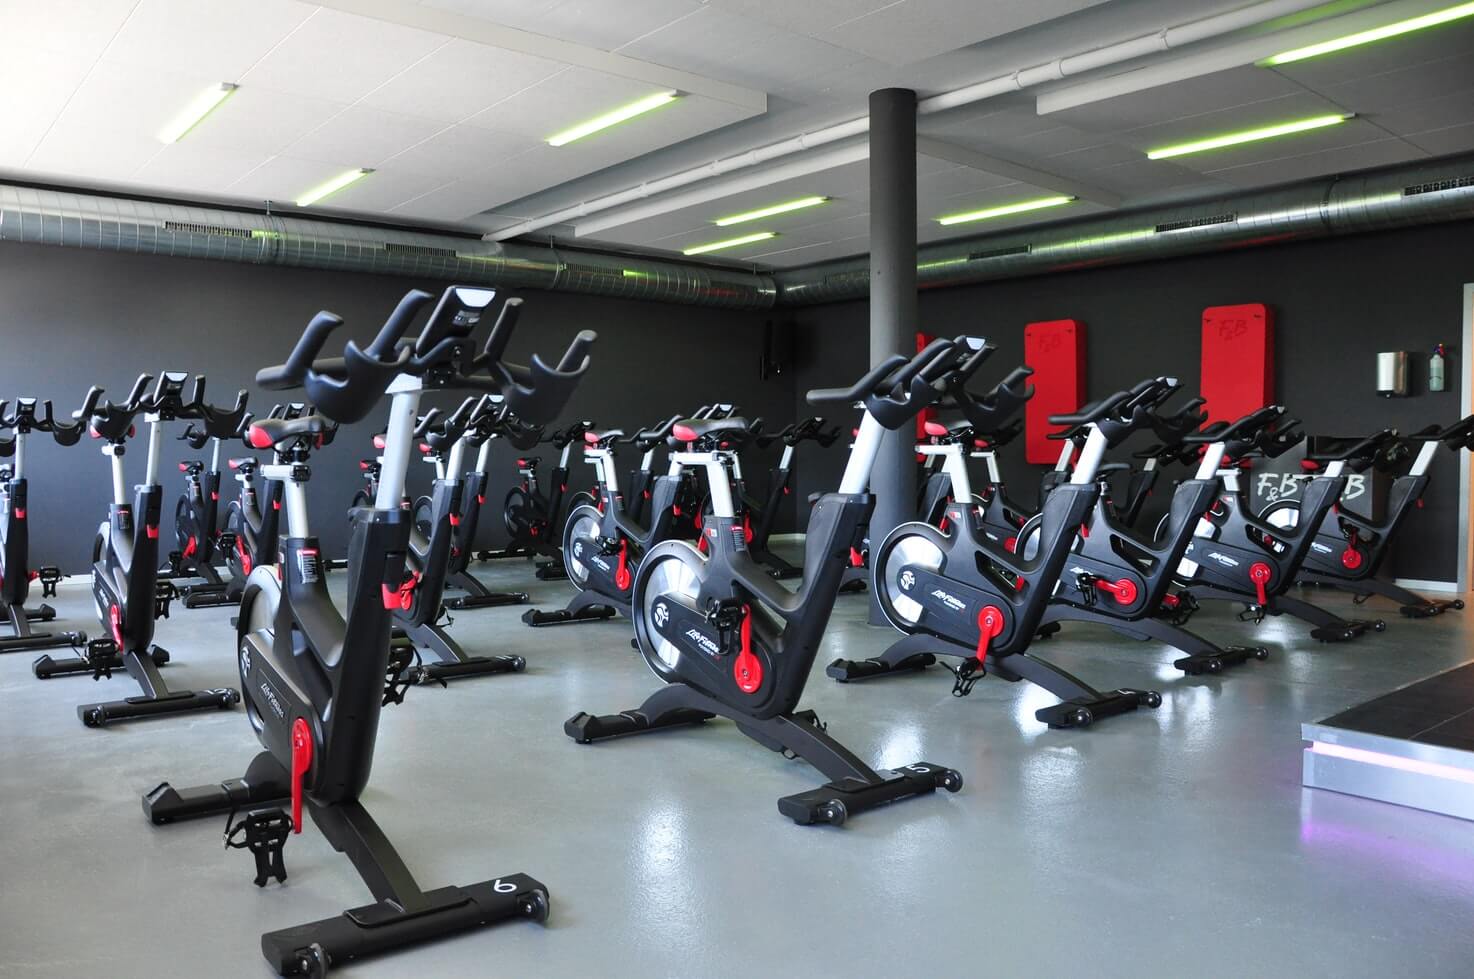 Machines de Musculation et Fitness en Salle de Sport